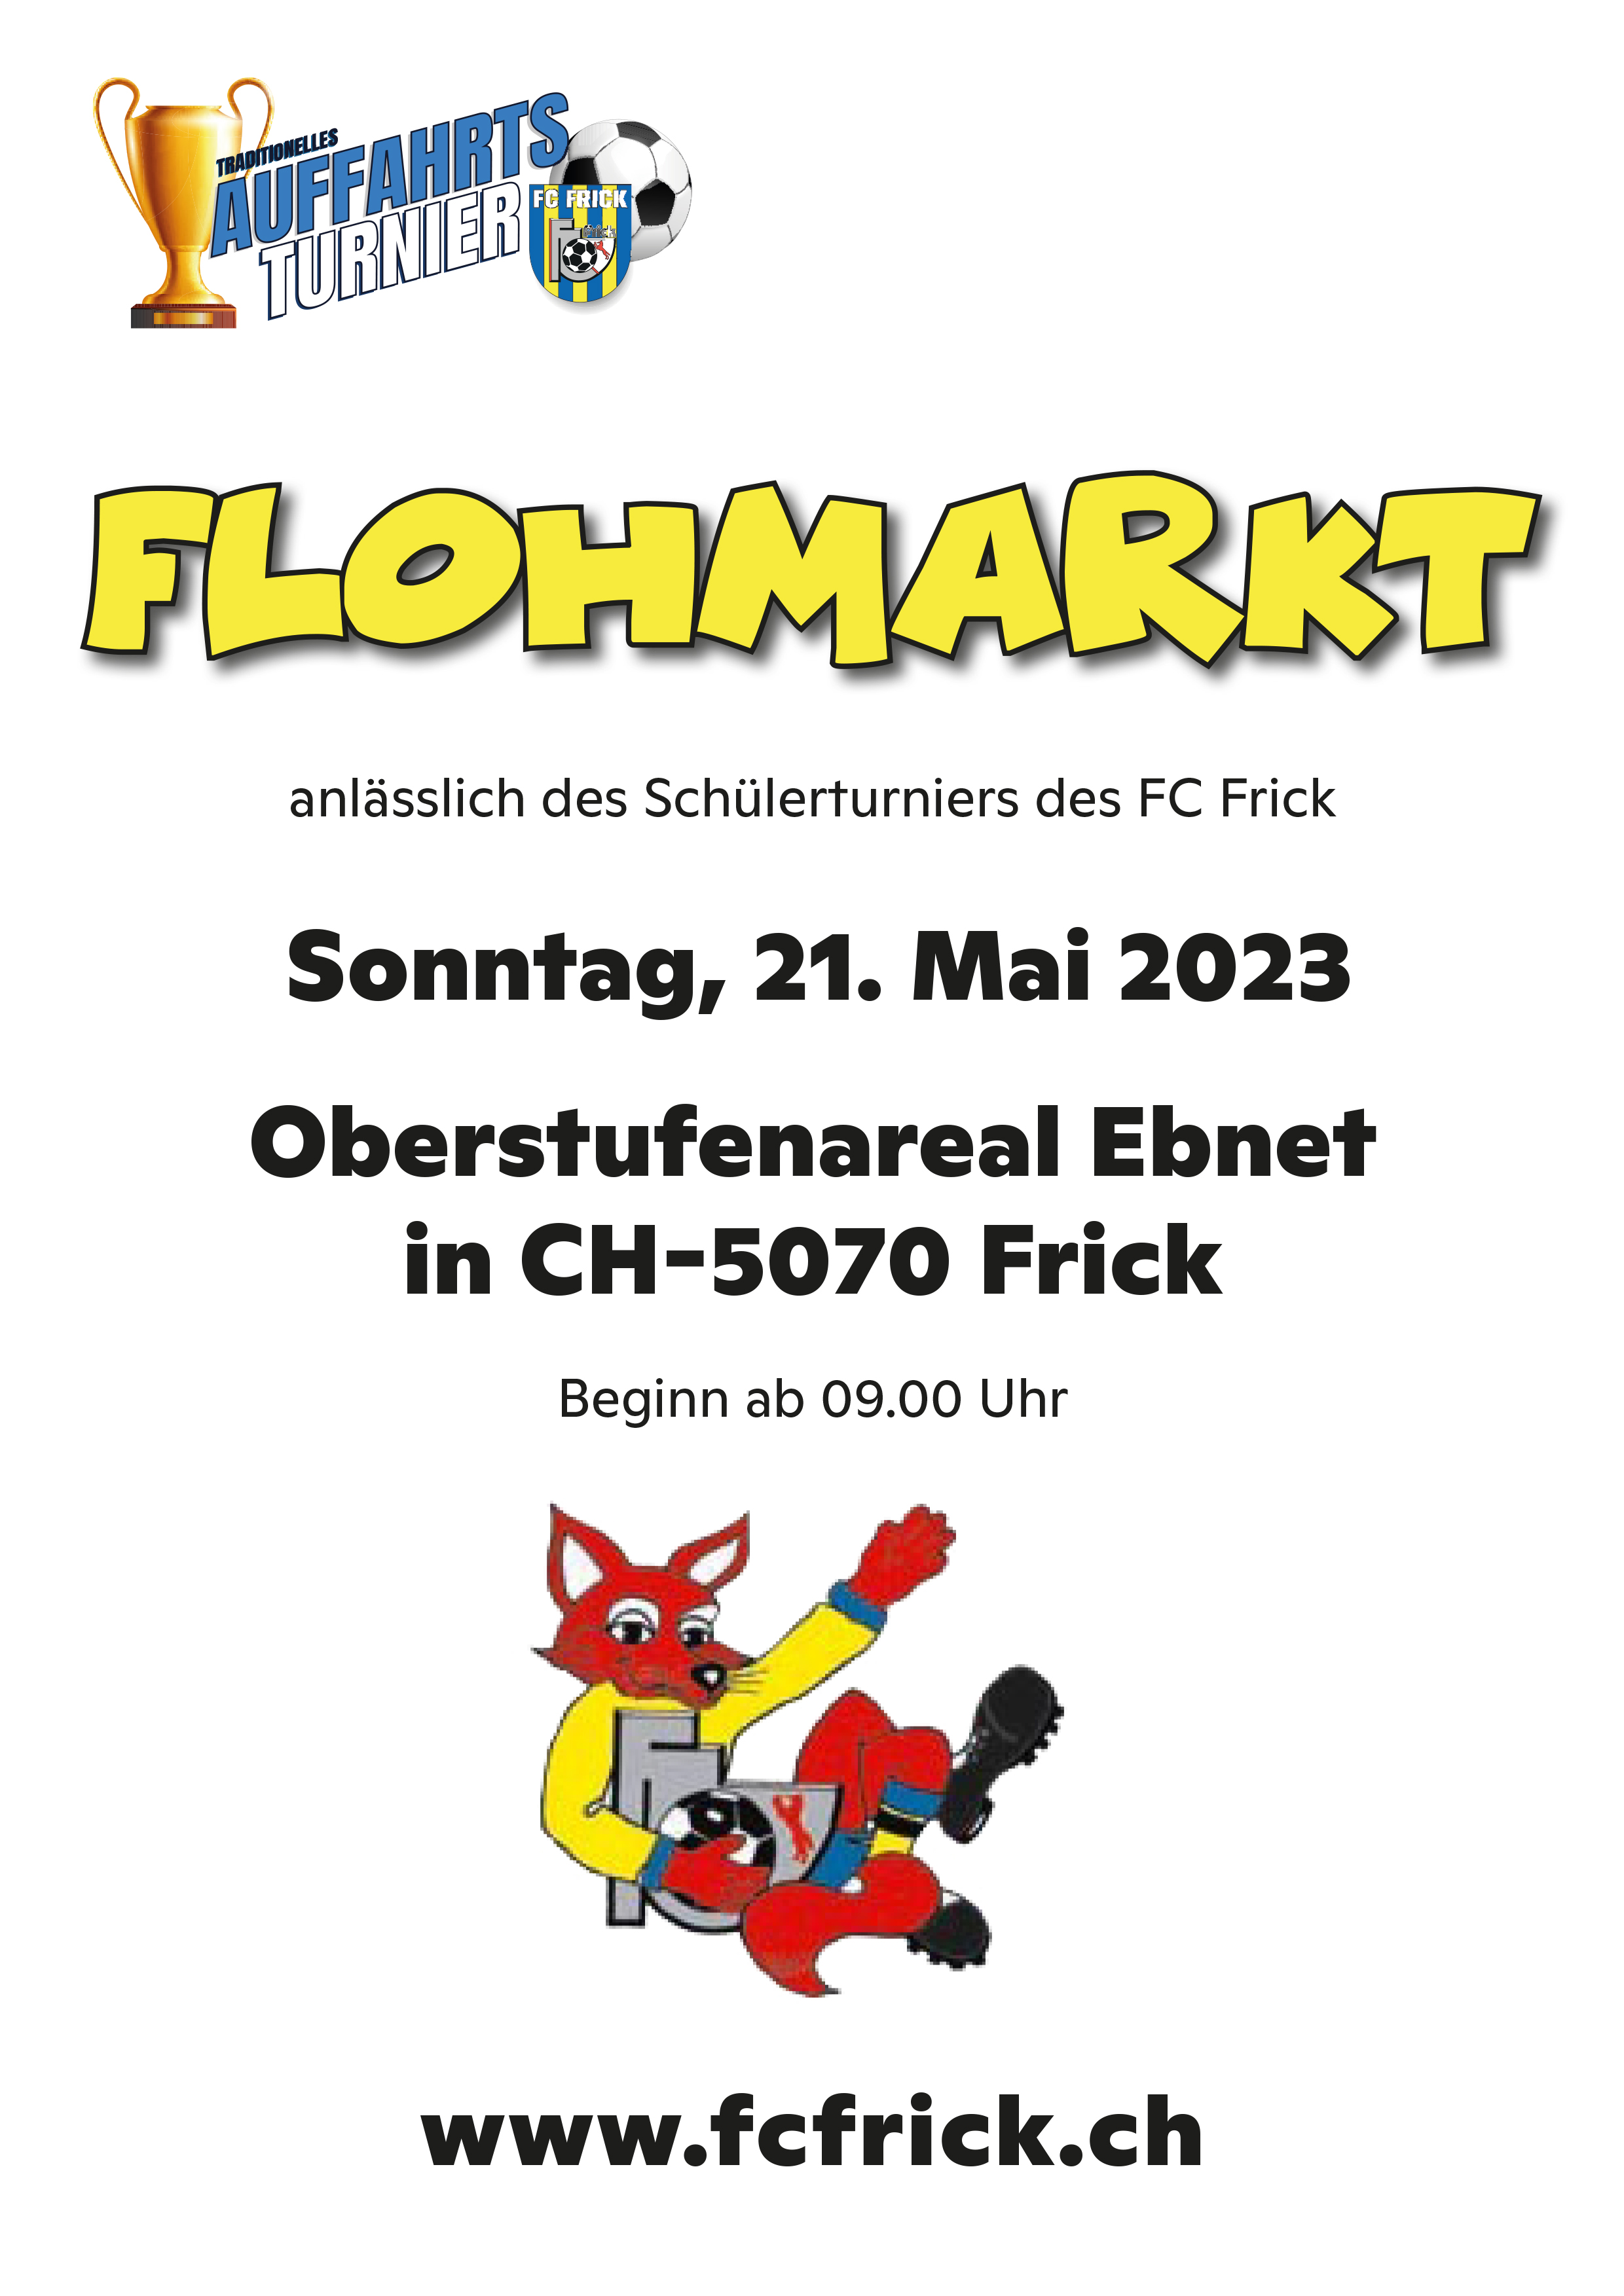 Flohmarkt Flyer A5 2020